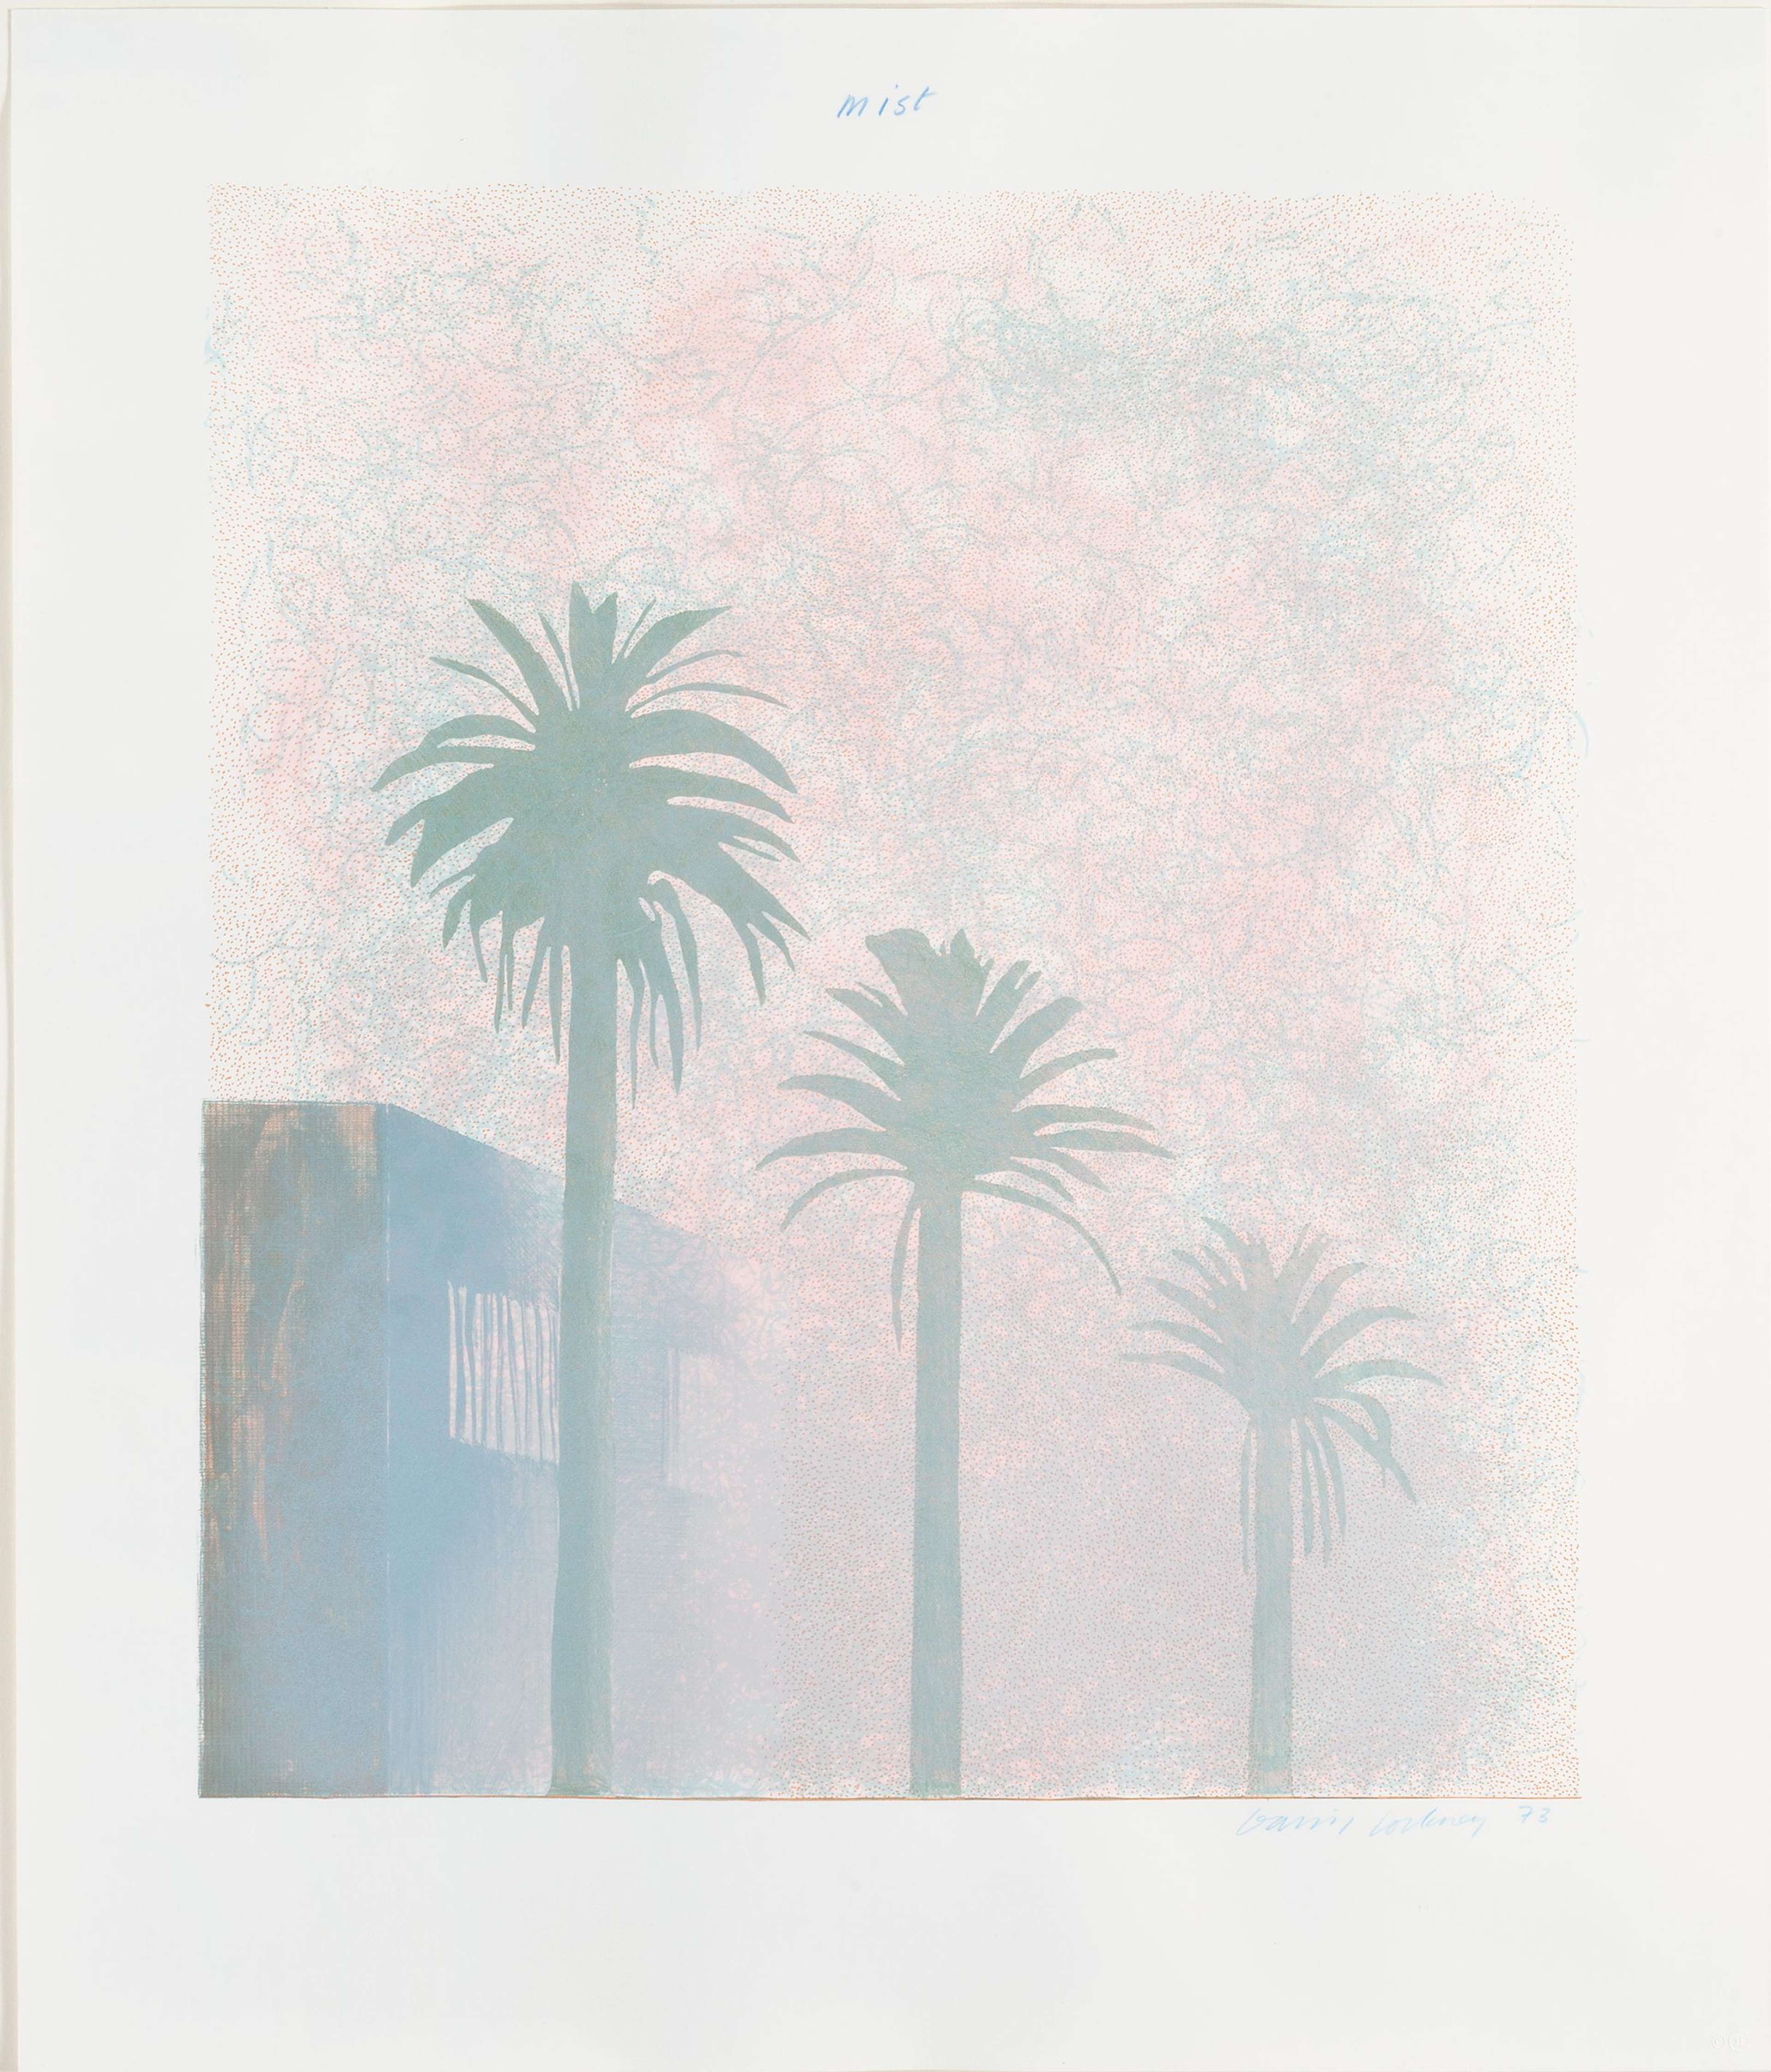 Mist by David Hockney - MyArtBroker 